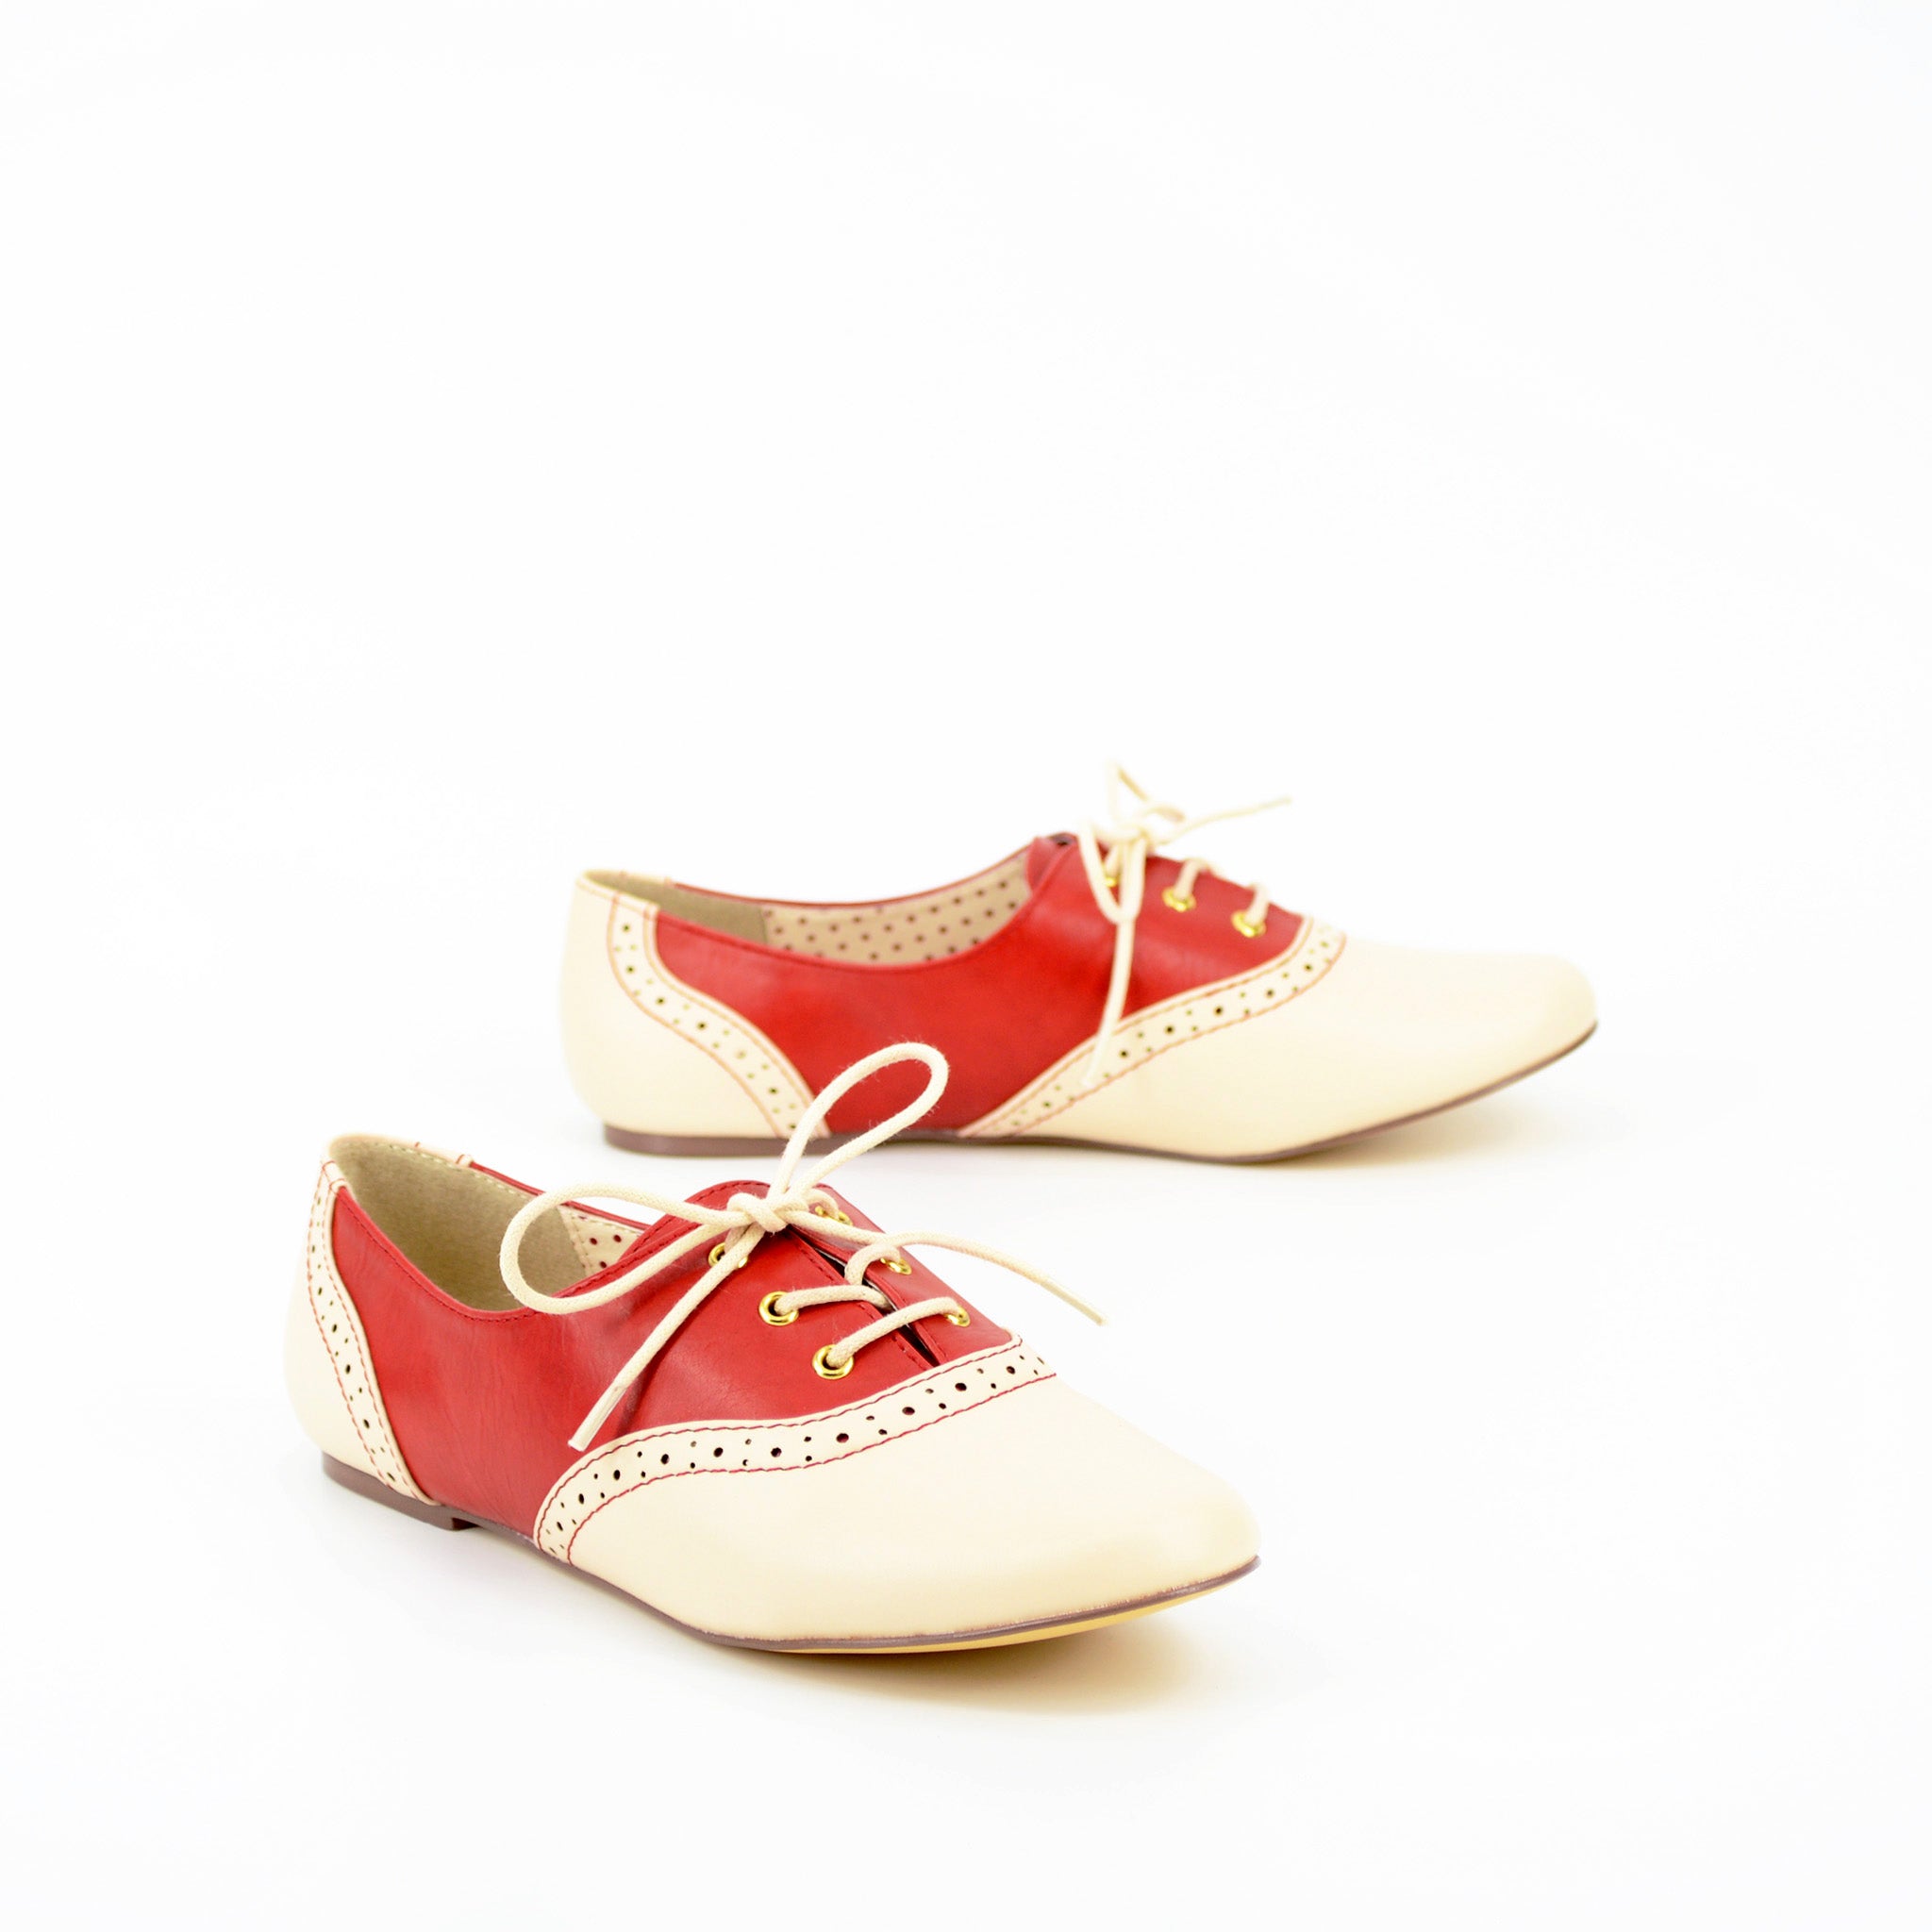 Emmie Classic – B.A.I.T. Footwear